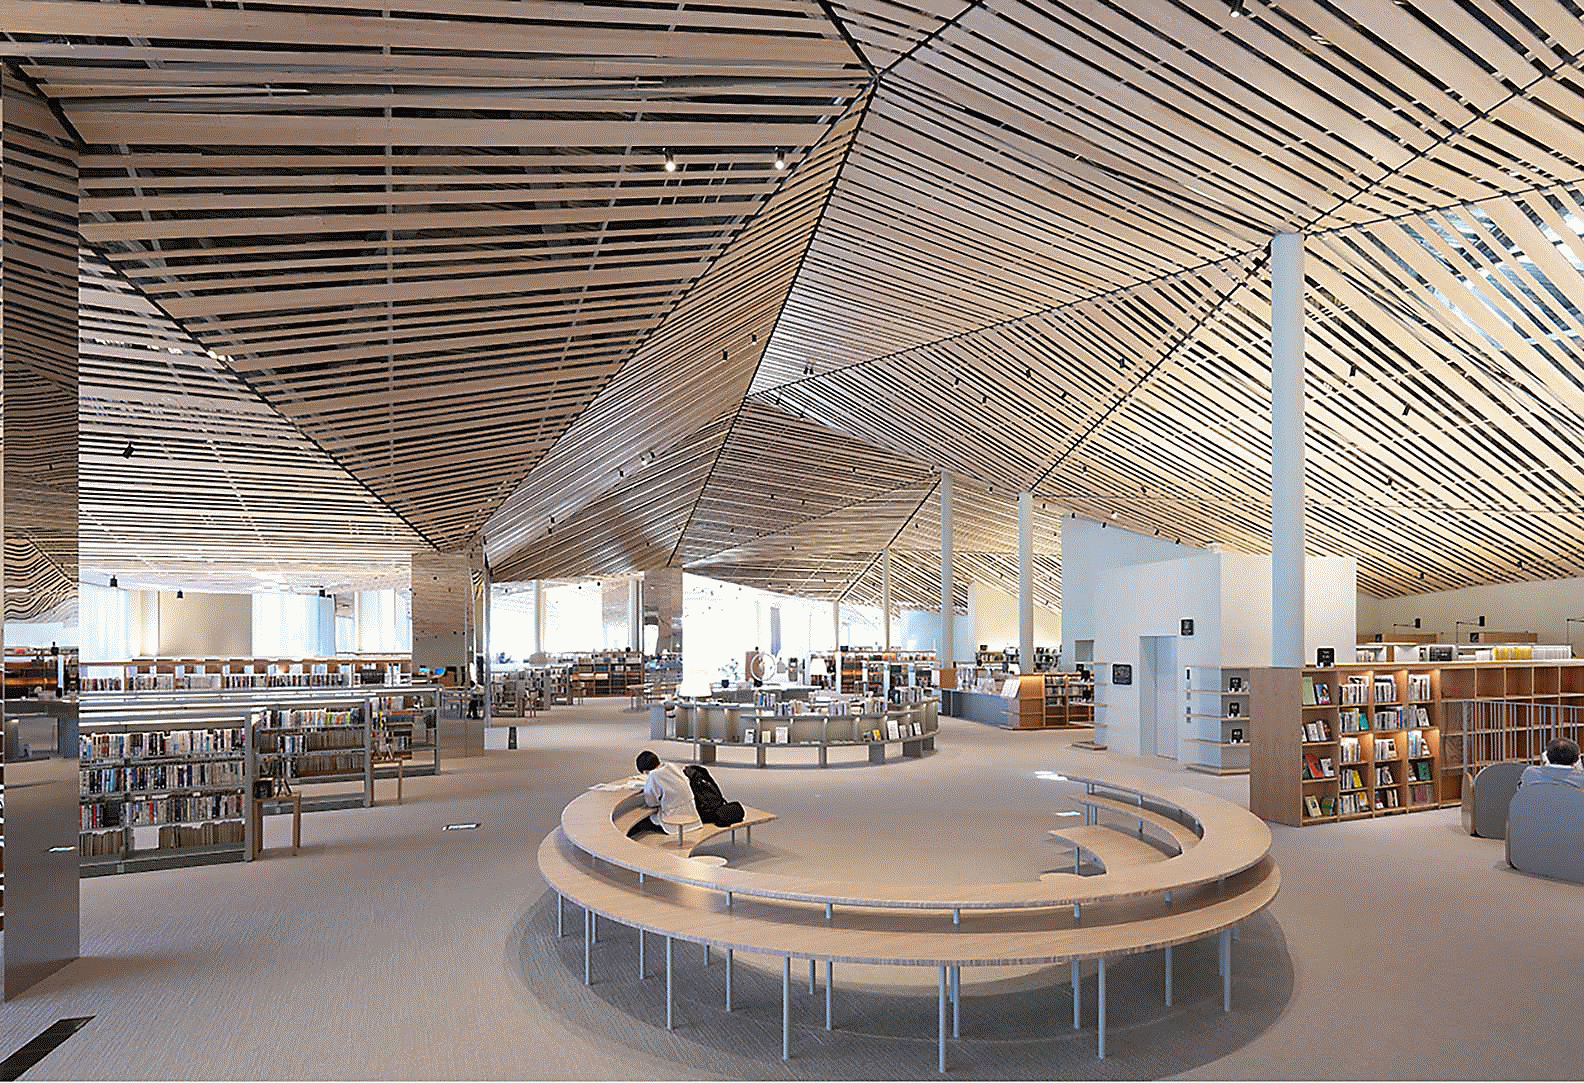 Billede af interiøret i et stort bibliotek med et kunstfærdigt design med mange lige træplanker i loftet med flot opløsning på hele skærmen